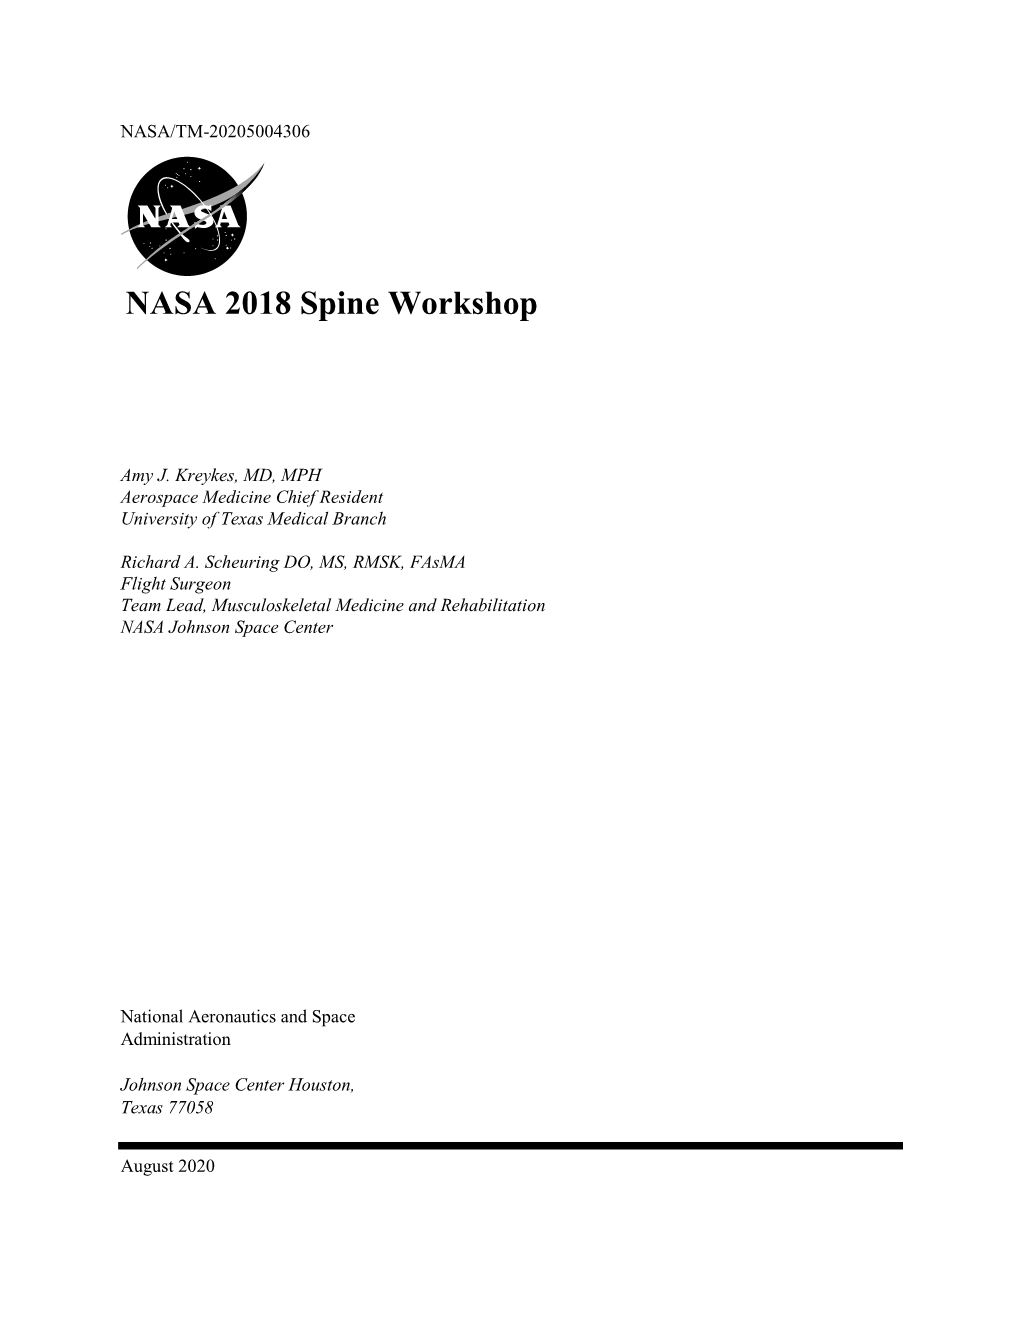 NASA 2018 Spine Workshop